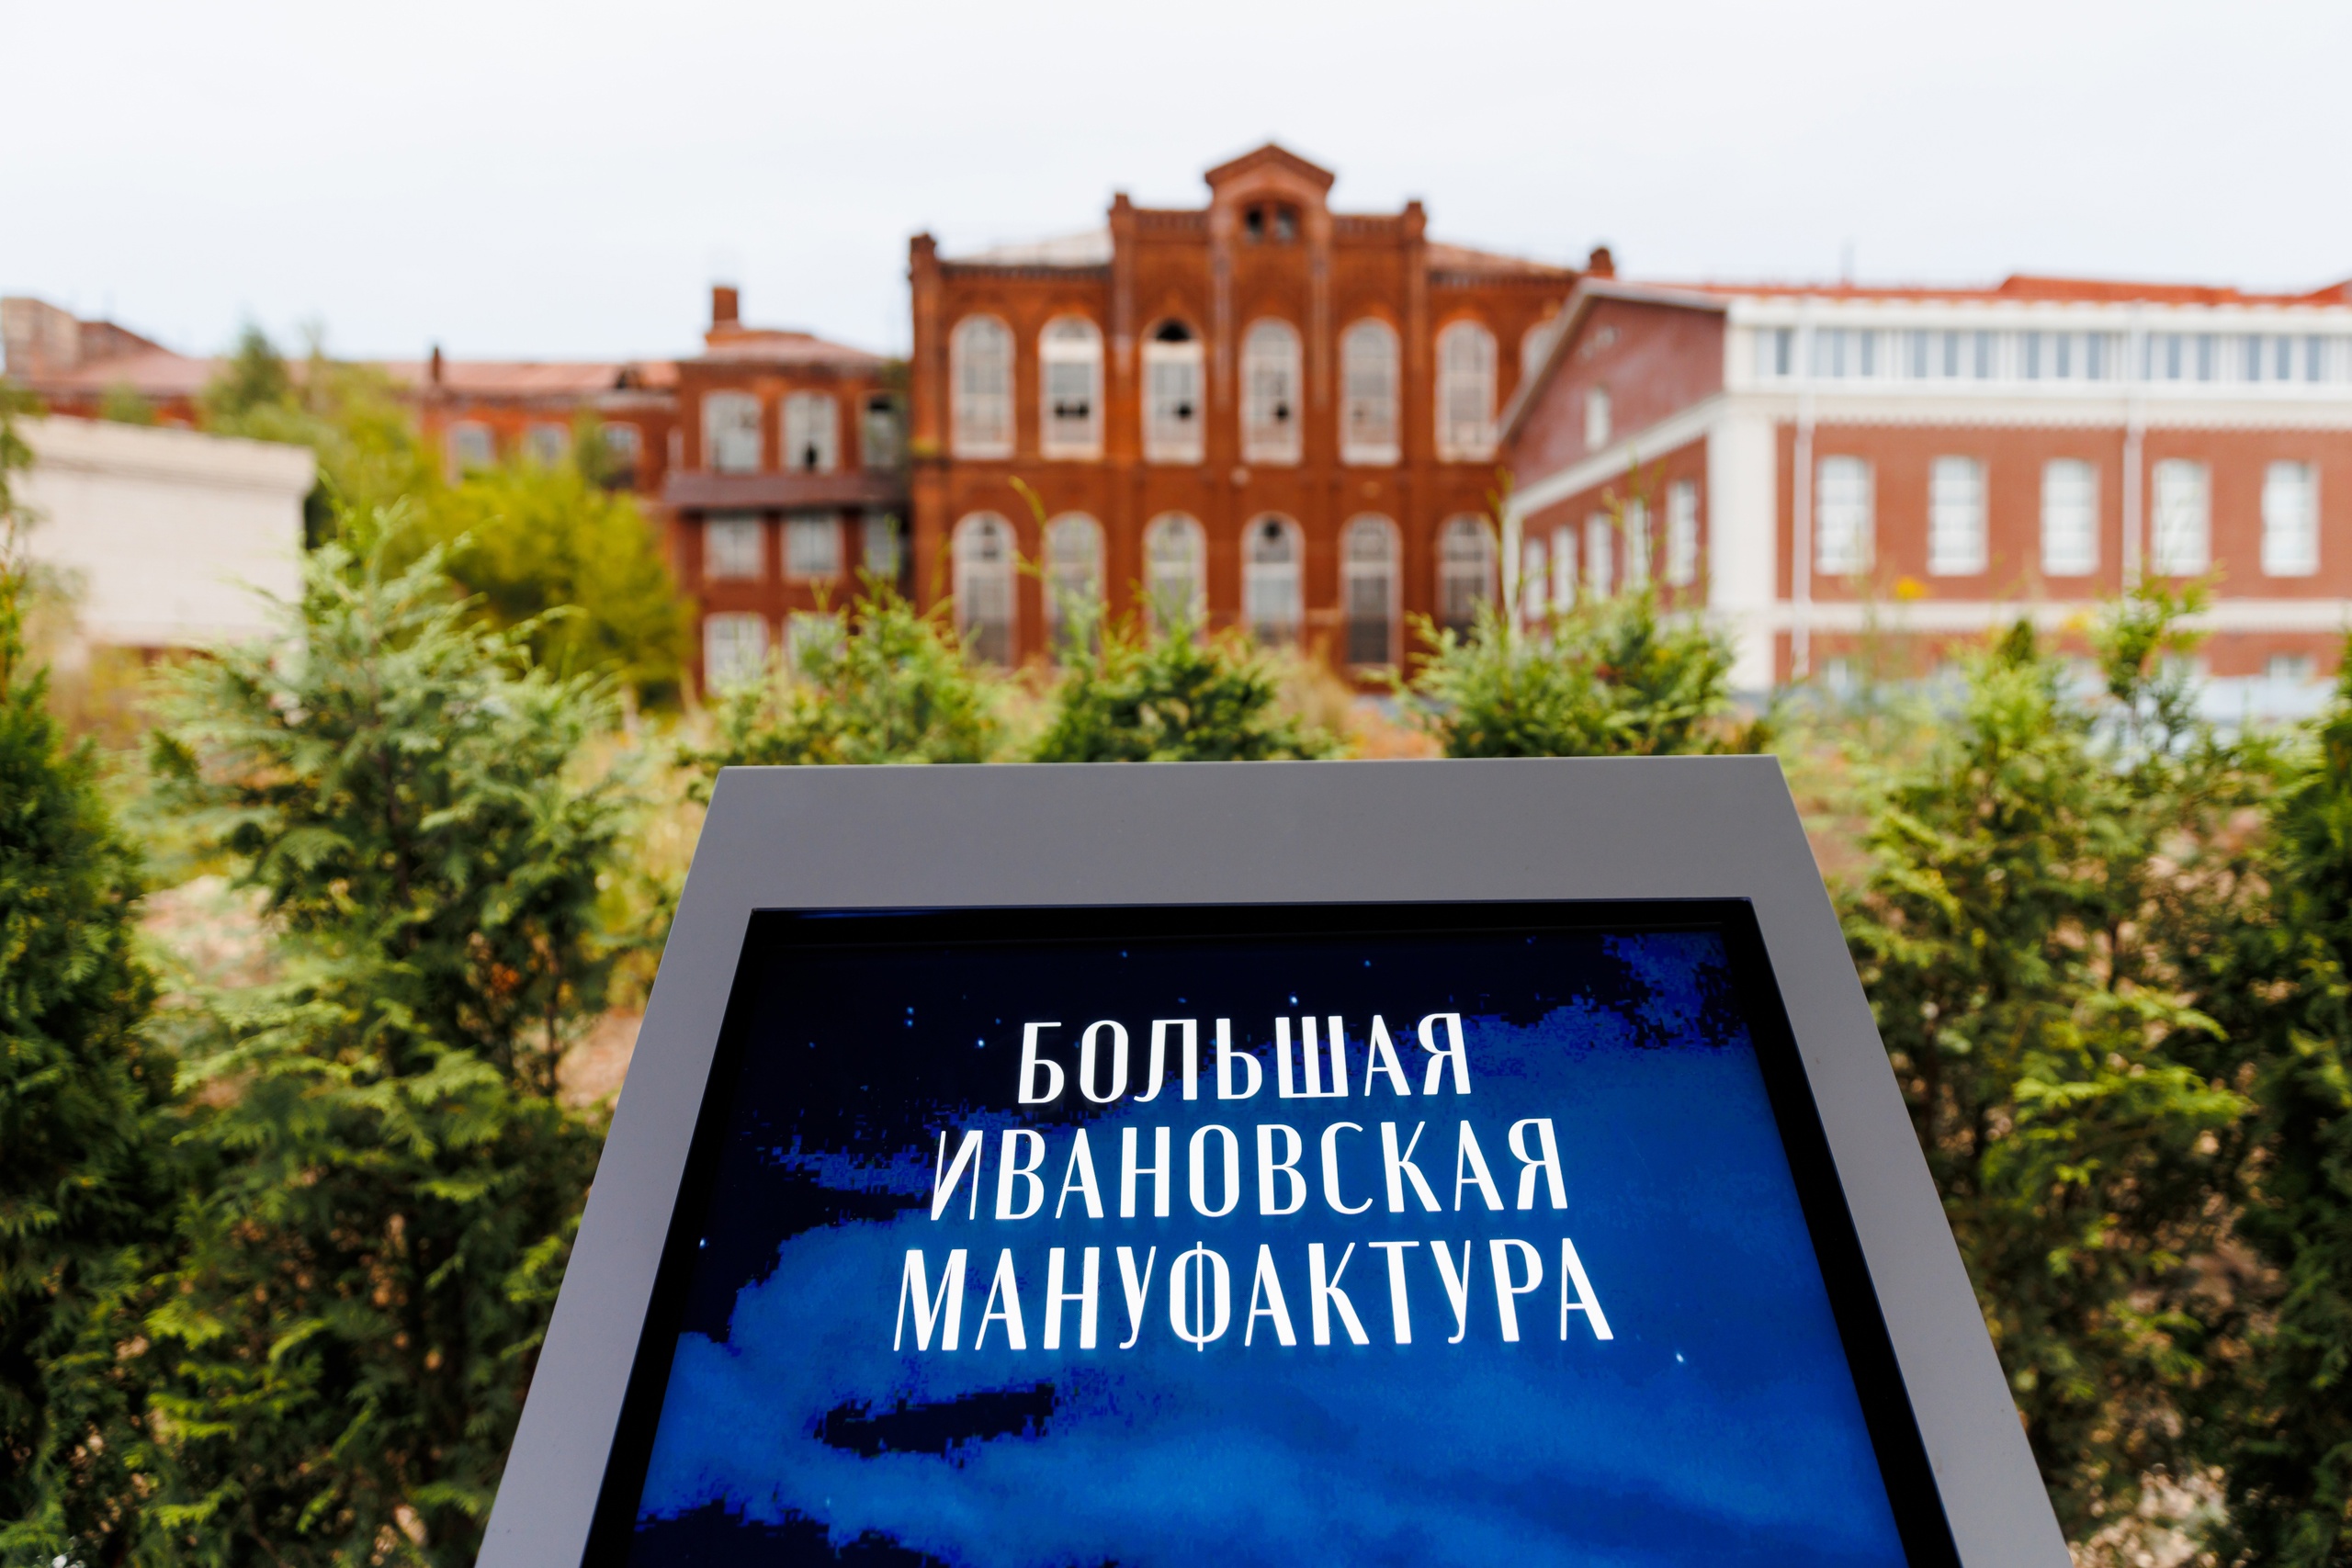 Глава Минобрнауки РФ отметил, что научно-образовательный кампус в Иванове - очень интересный проект